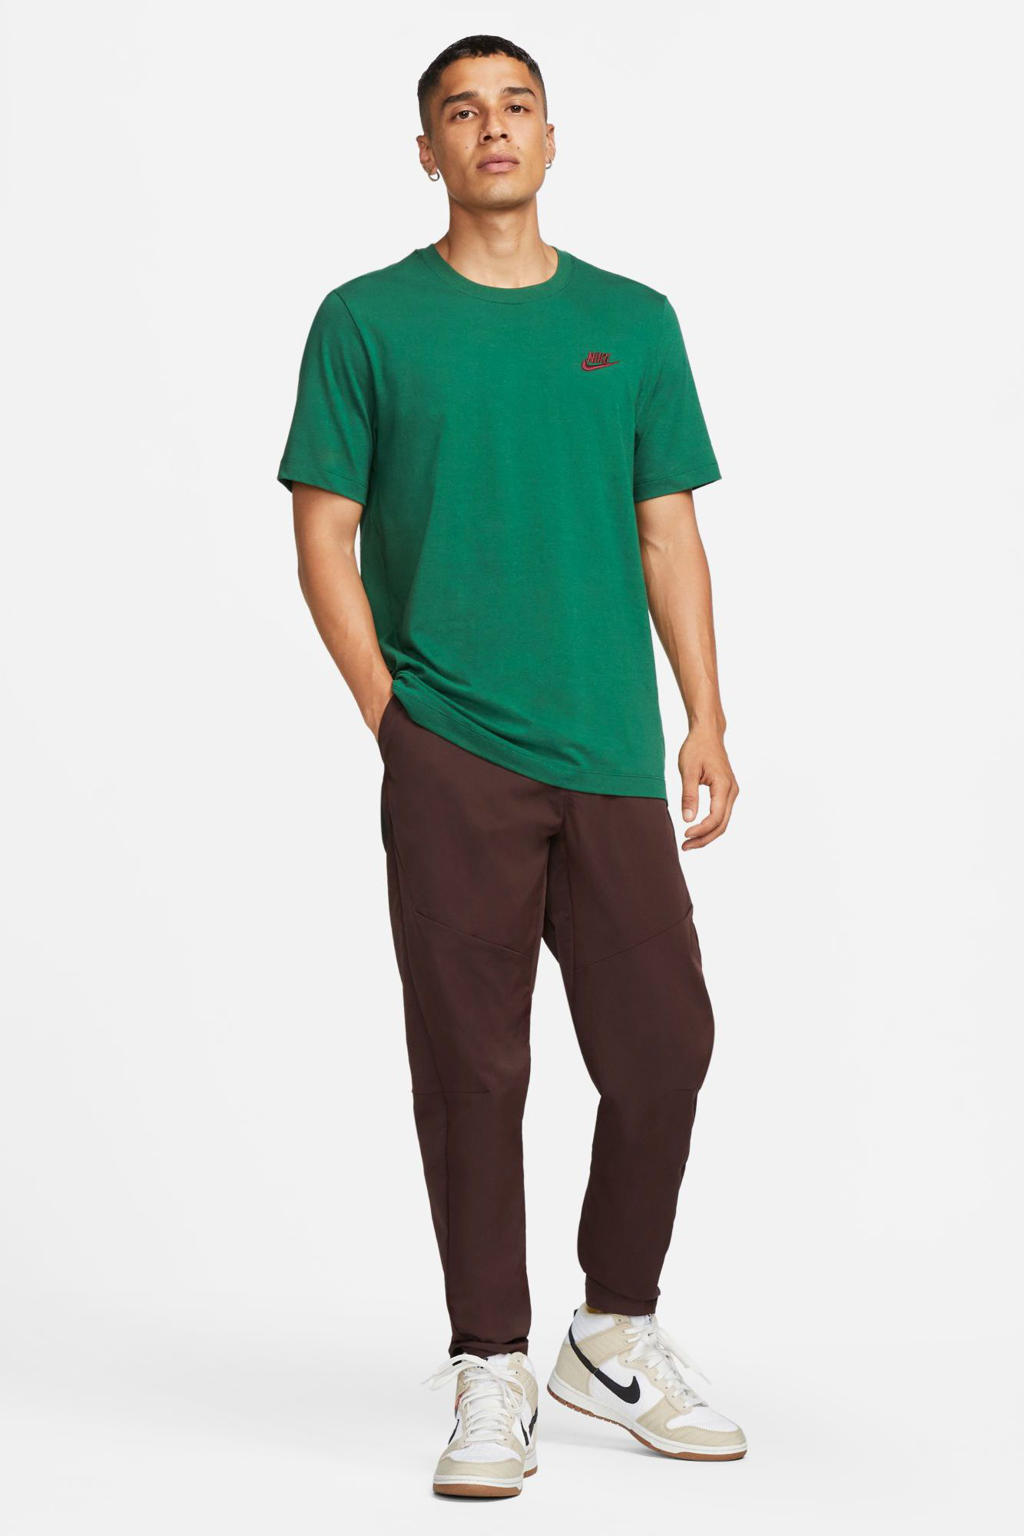 Groene heren Nike T-shirt van katoen met logo dessin, korte mouwen en ronde hals